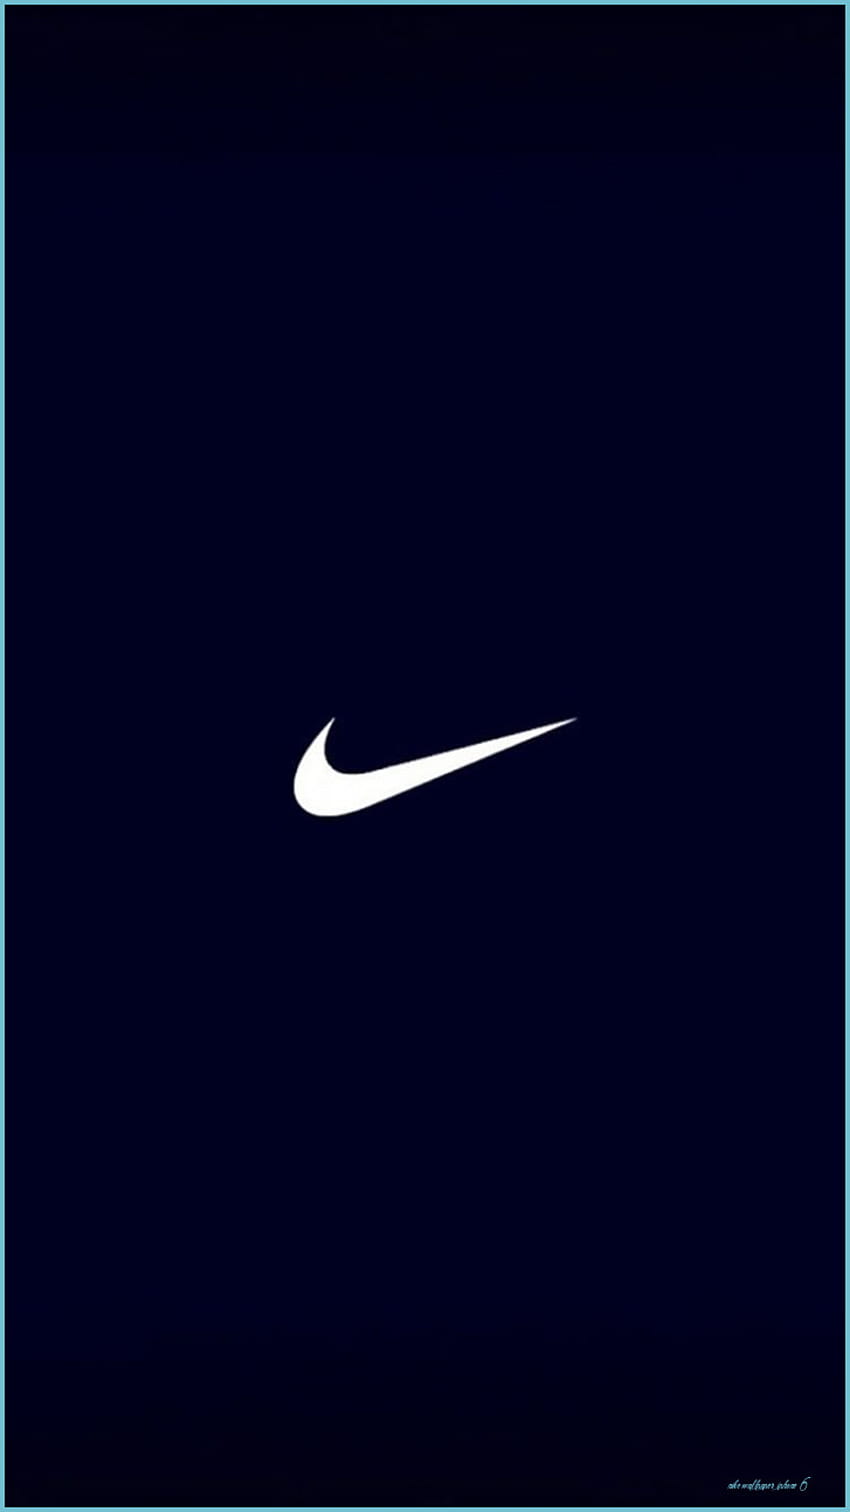 Nike Iphone Top Nike Iphone Background Nike Iphone 6 Iphone 11 Nike Hd Phone Wallpaper Pxfuel